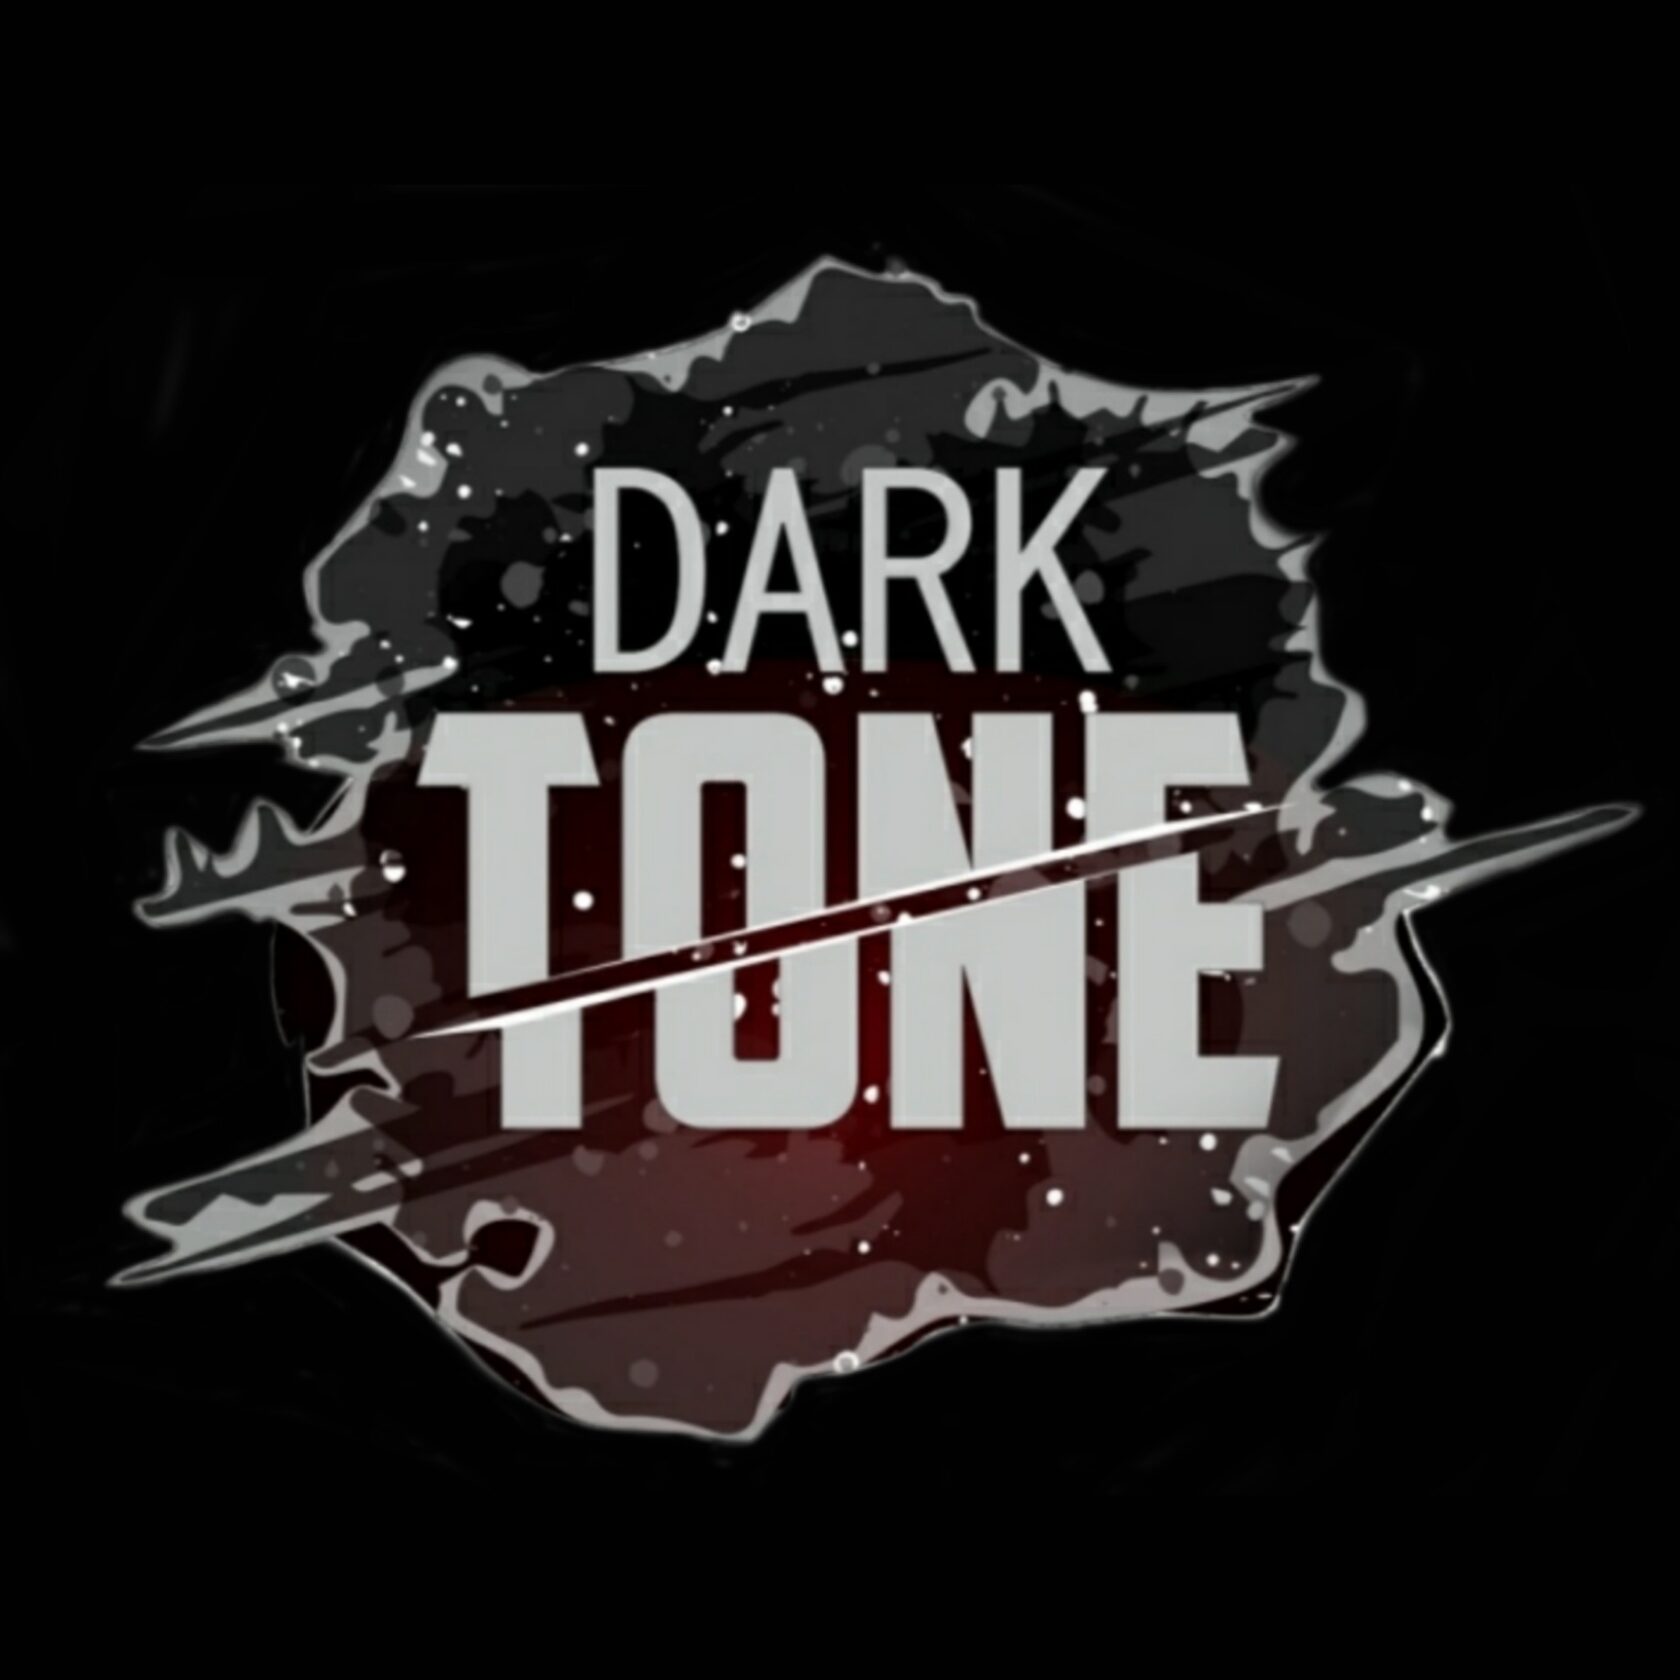 Dark tone